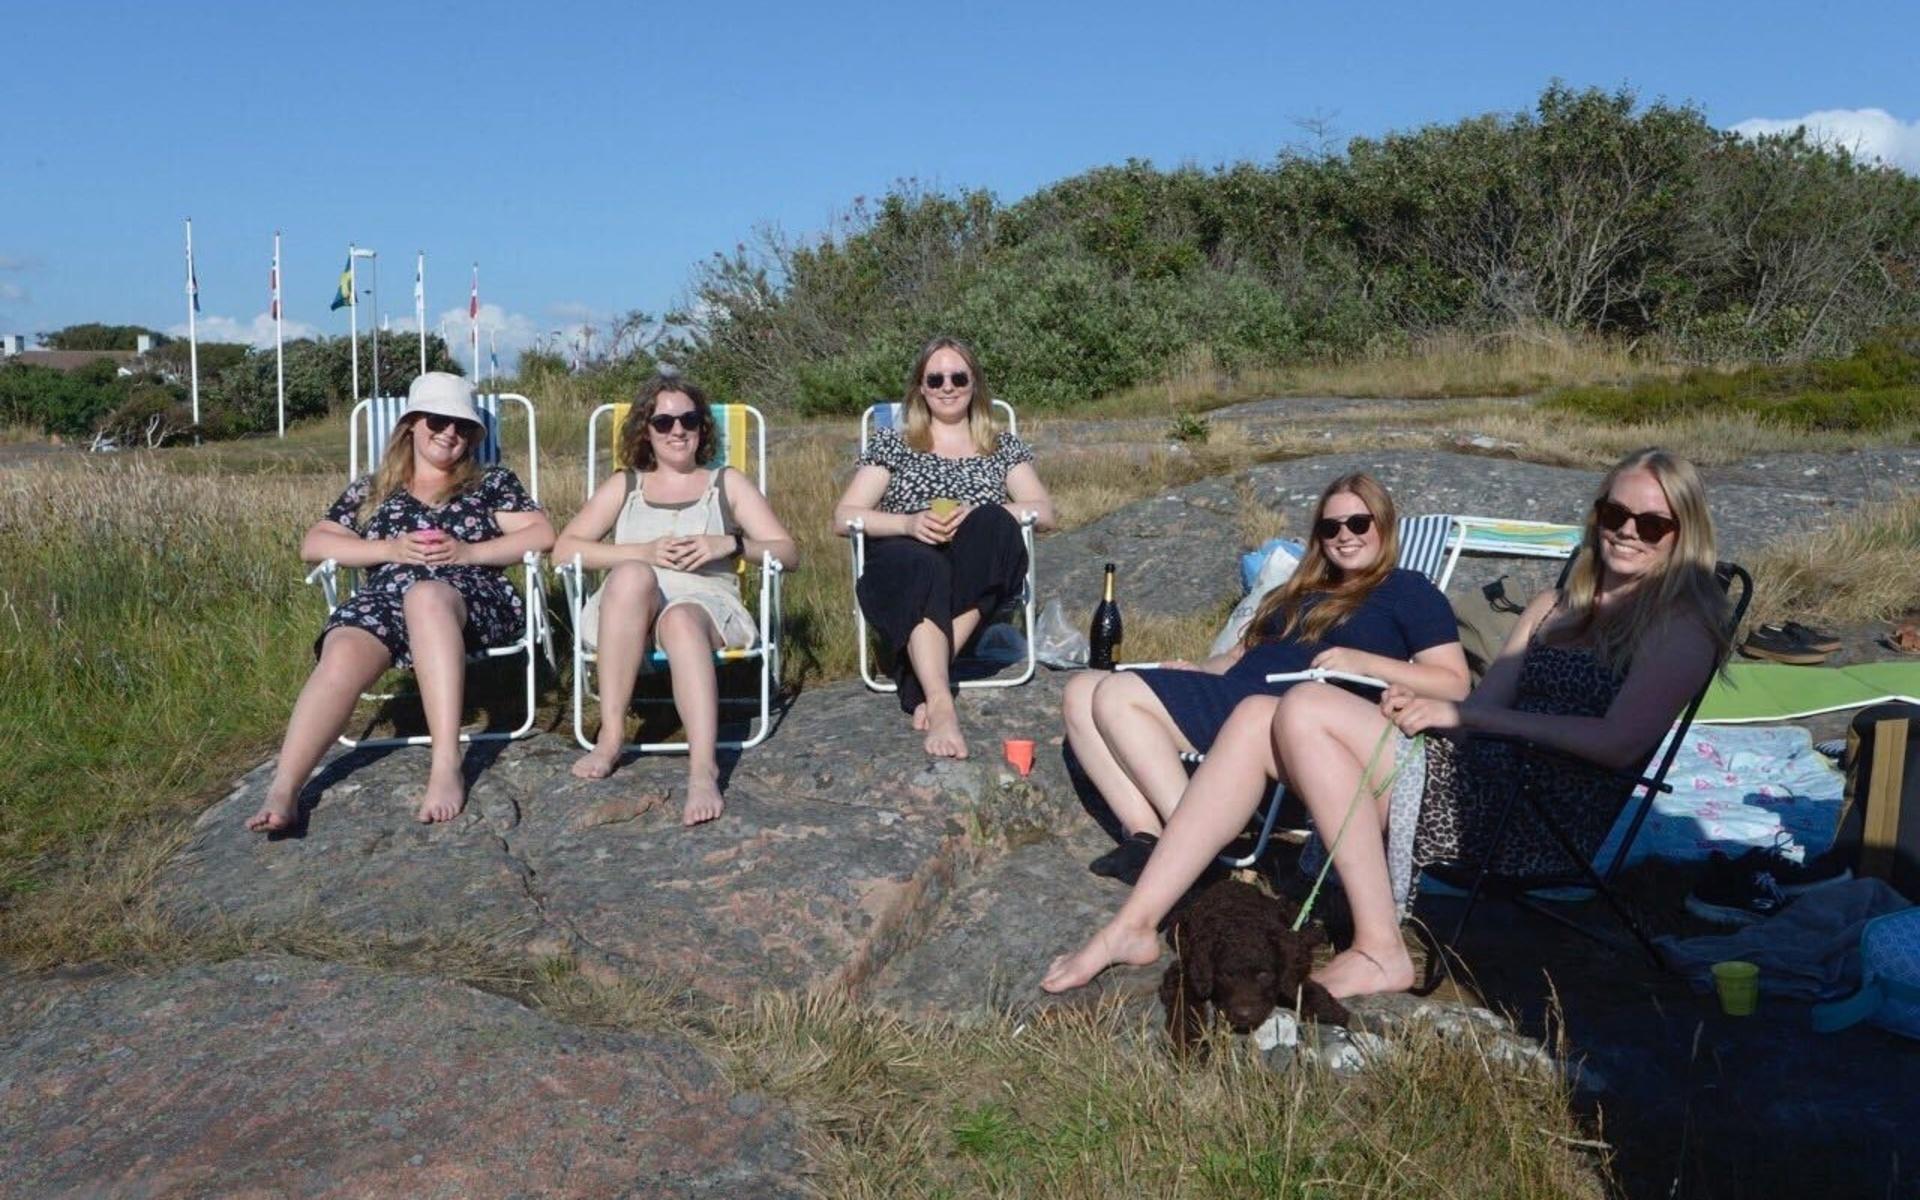 Studiekompisarna Molly Lundberg, Cornelia Böhm, Emma Samuelsson, Lisa Nilsson och Ellinor Ihs Håkansson tänkte lyssna på konserten från klipporna.